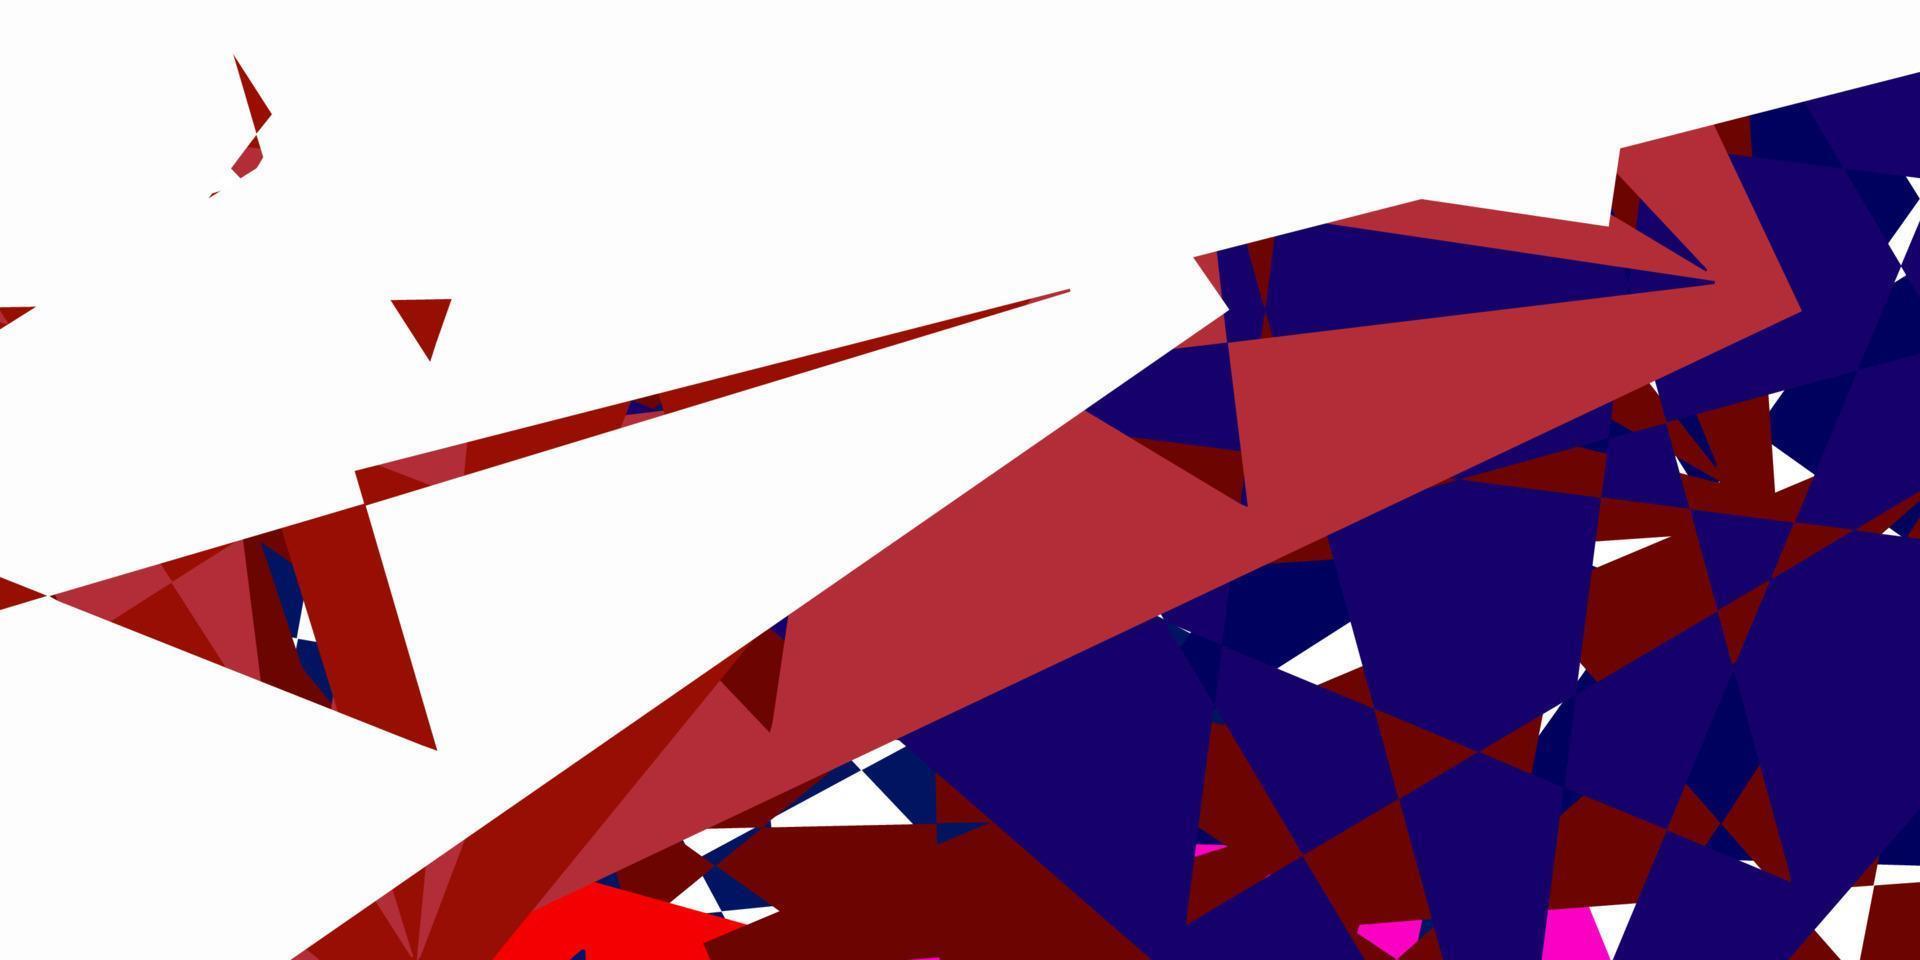 texture de vecteur bleu clair, rouge avec des triangles aléatoires.